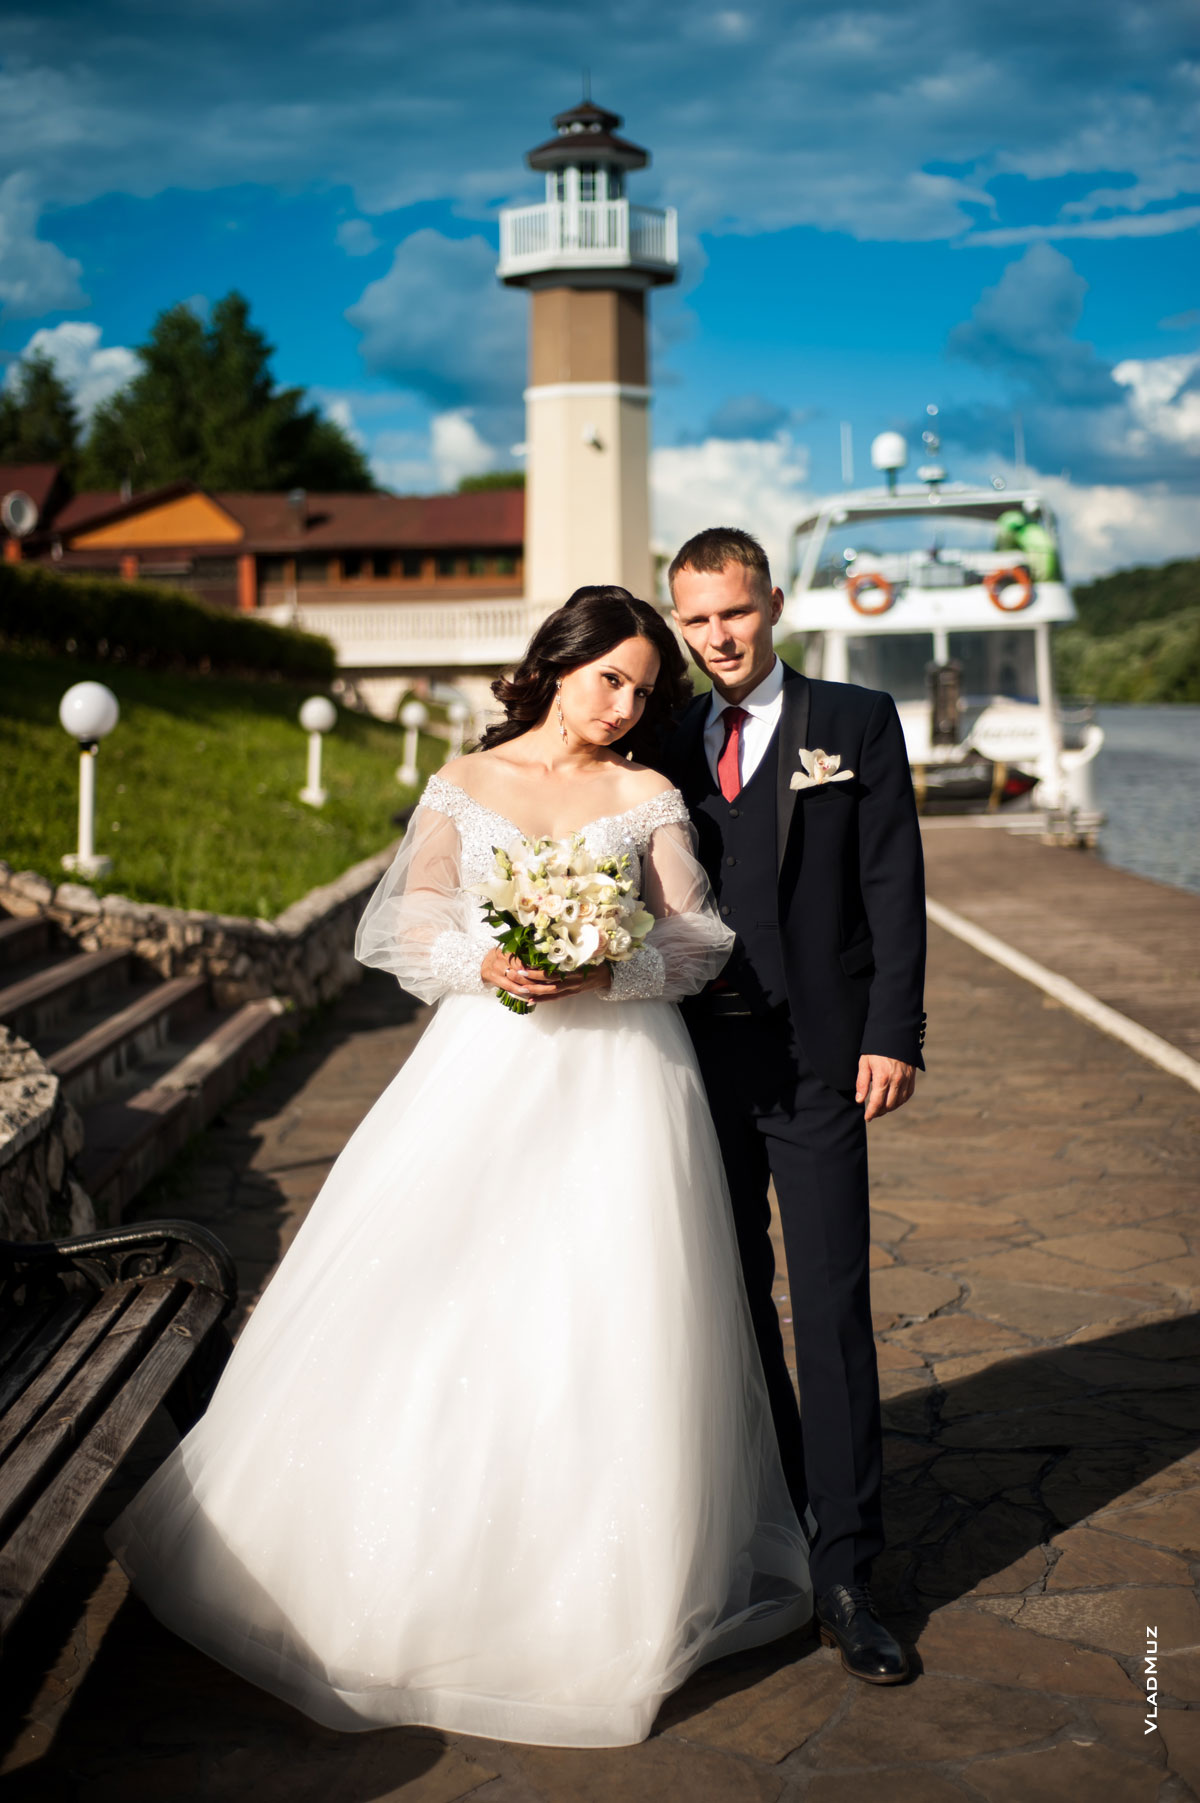 Фото кружащейся невесты на фоне ротонды ресторанно-гостиничного комплекса «Белый берег» в Московской области